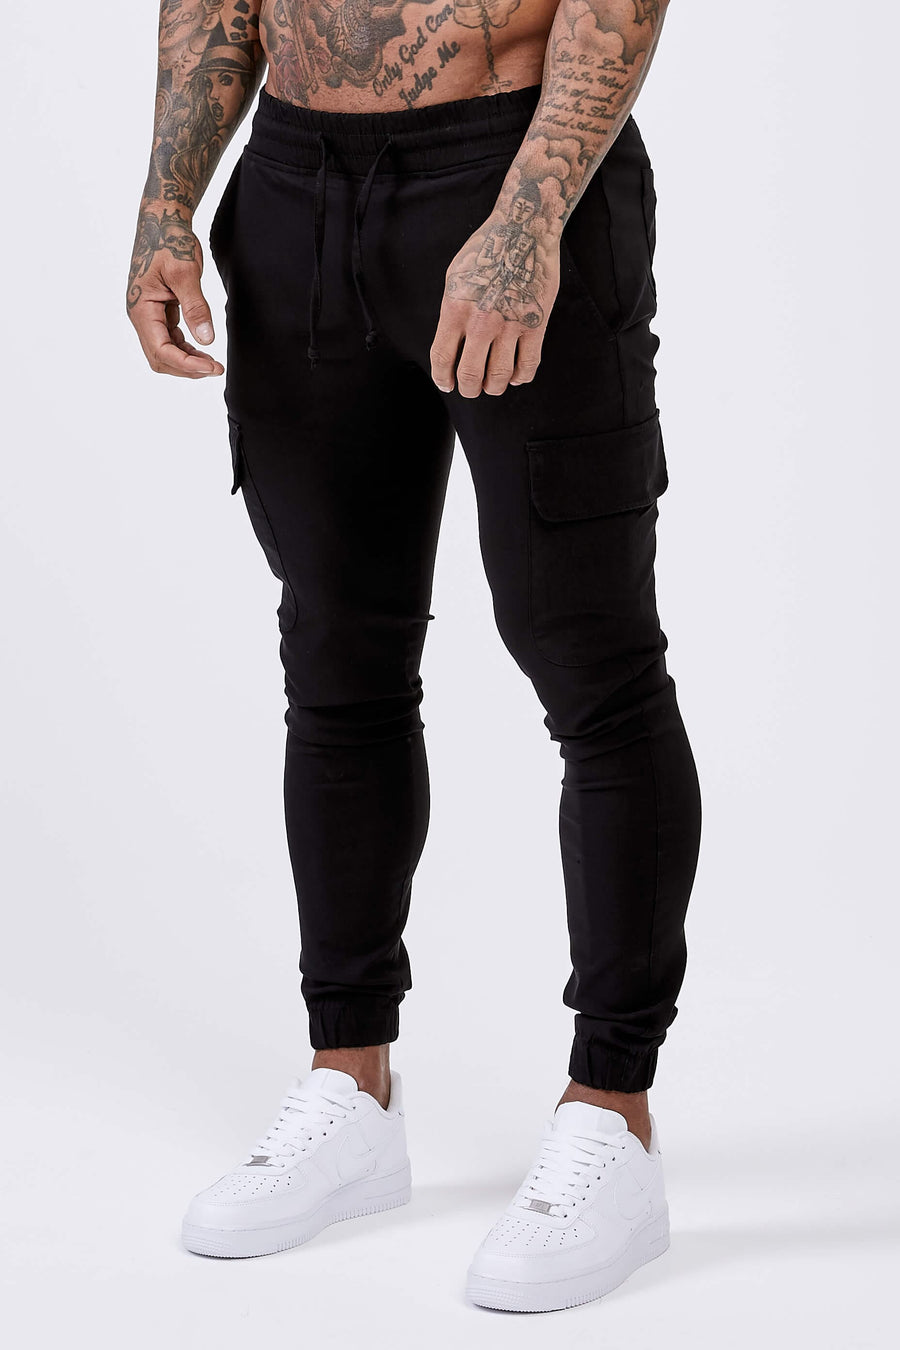 Legend London Trousers SMART CARGO PANT - BLACK